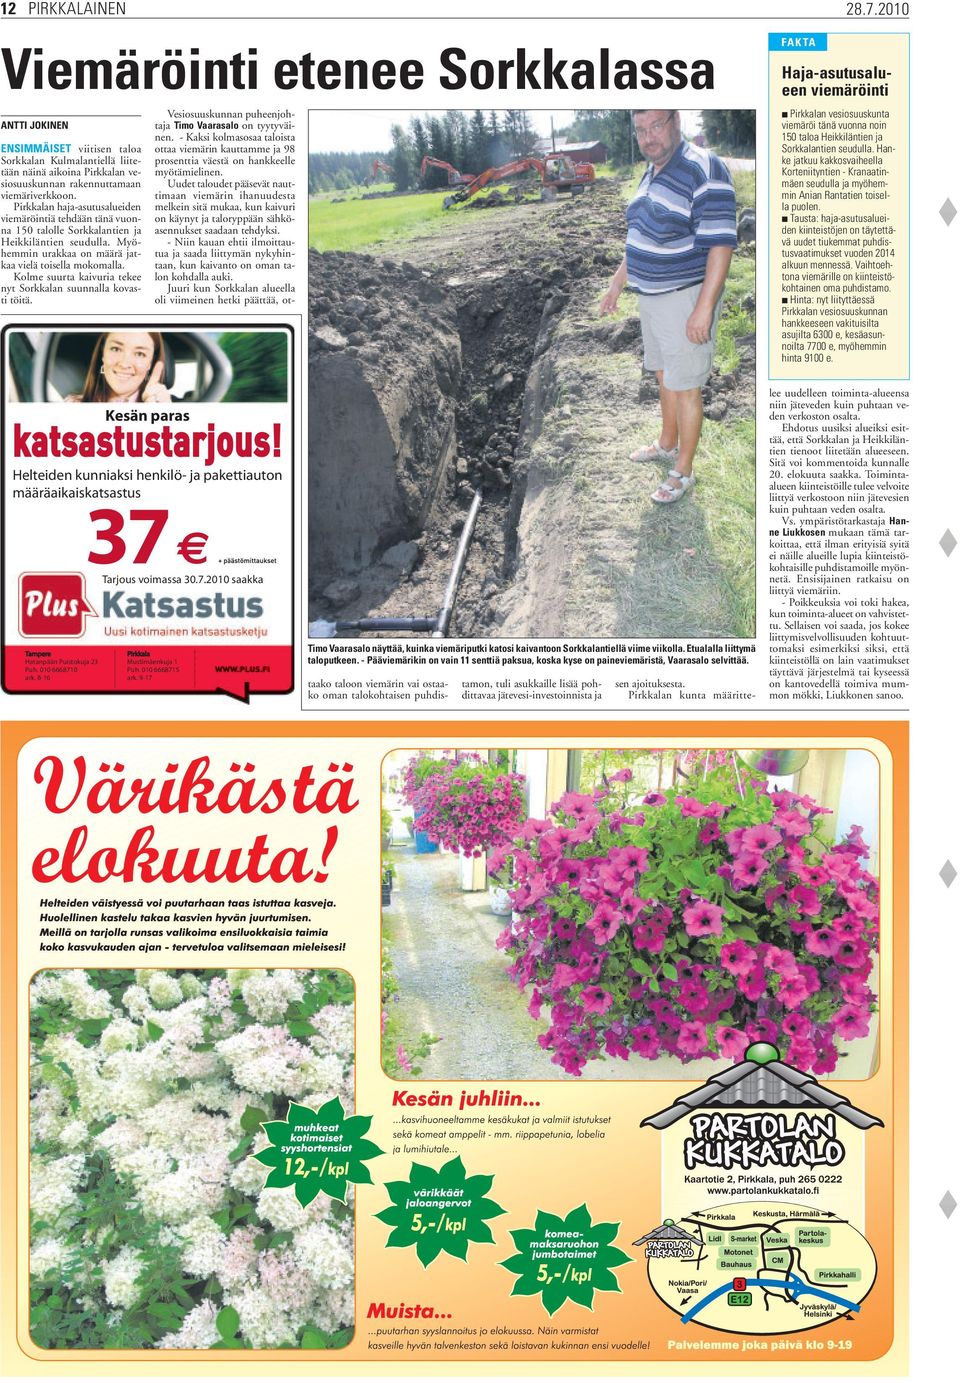 Kolme suurta kaivuria tekee nyt Sorkkalan suunnalla kovasti töitä. FAKTA Vesiosuuskunnan puheenjohtaja Timo Vaarasalo on tyytyväinen.